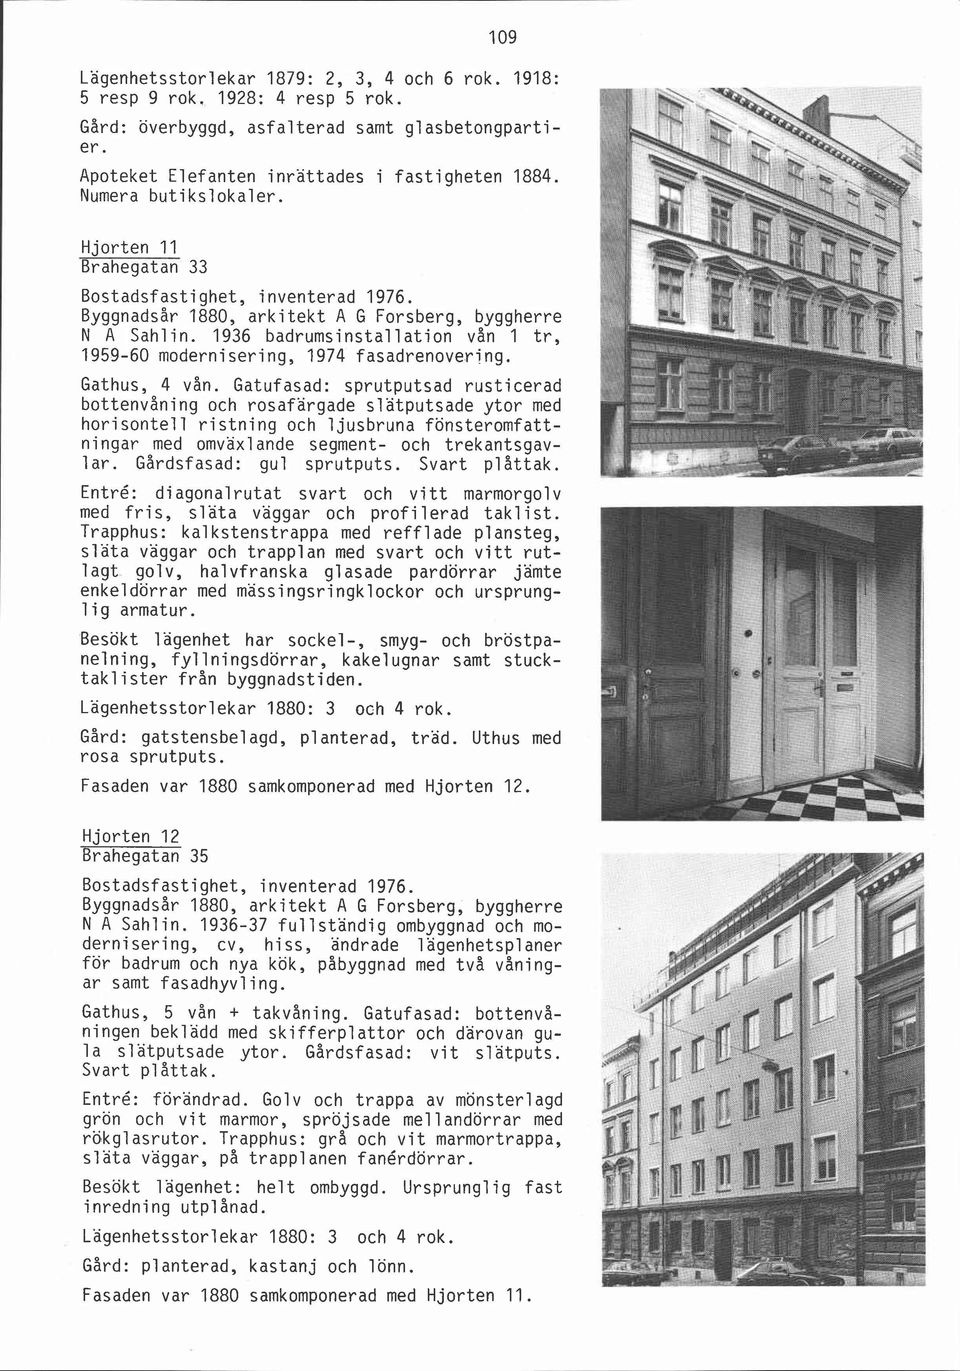 1936 badrumsinstallation vån 1 tr, 1959-60 modernisering, 1974 fasadrenovering. Gathus, 4 vån.